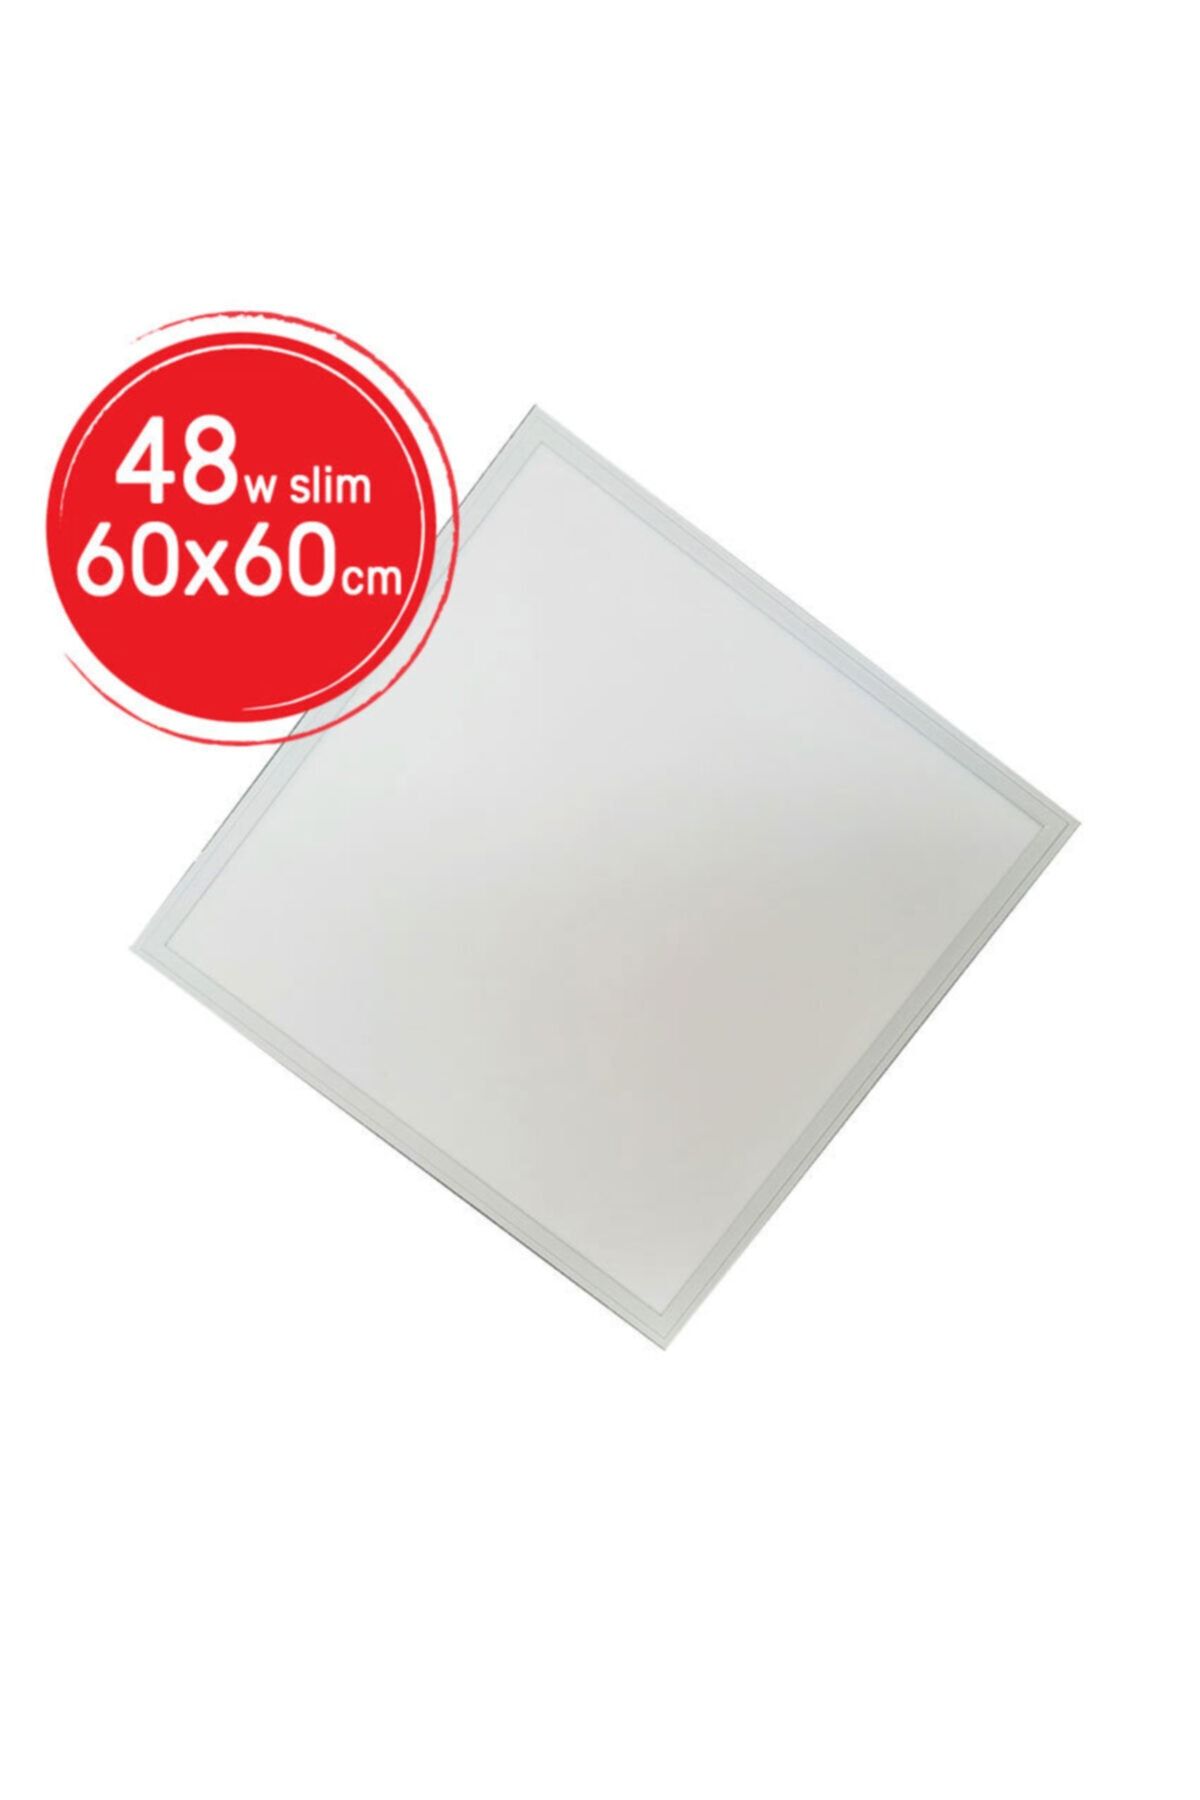 Sunlight Sıva Altı 60x60 48w Slim Led Panel Armatür Trafolu Beyaz 10 Adet